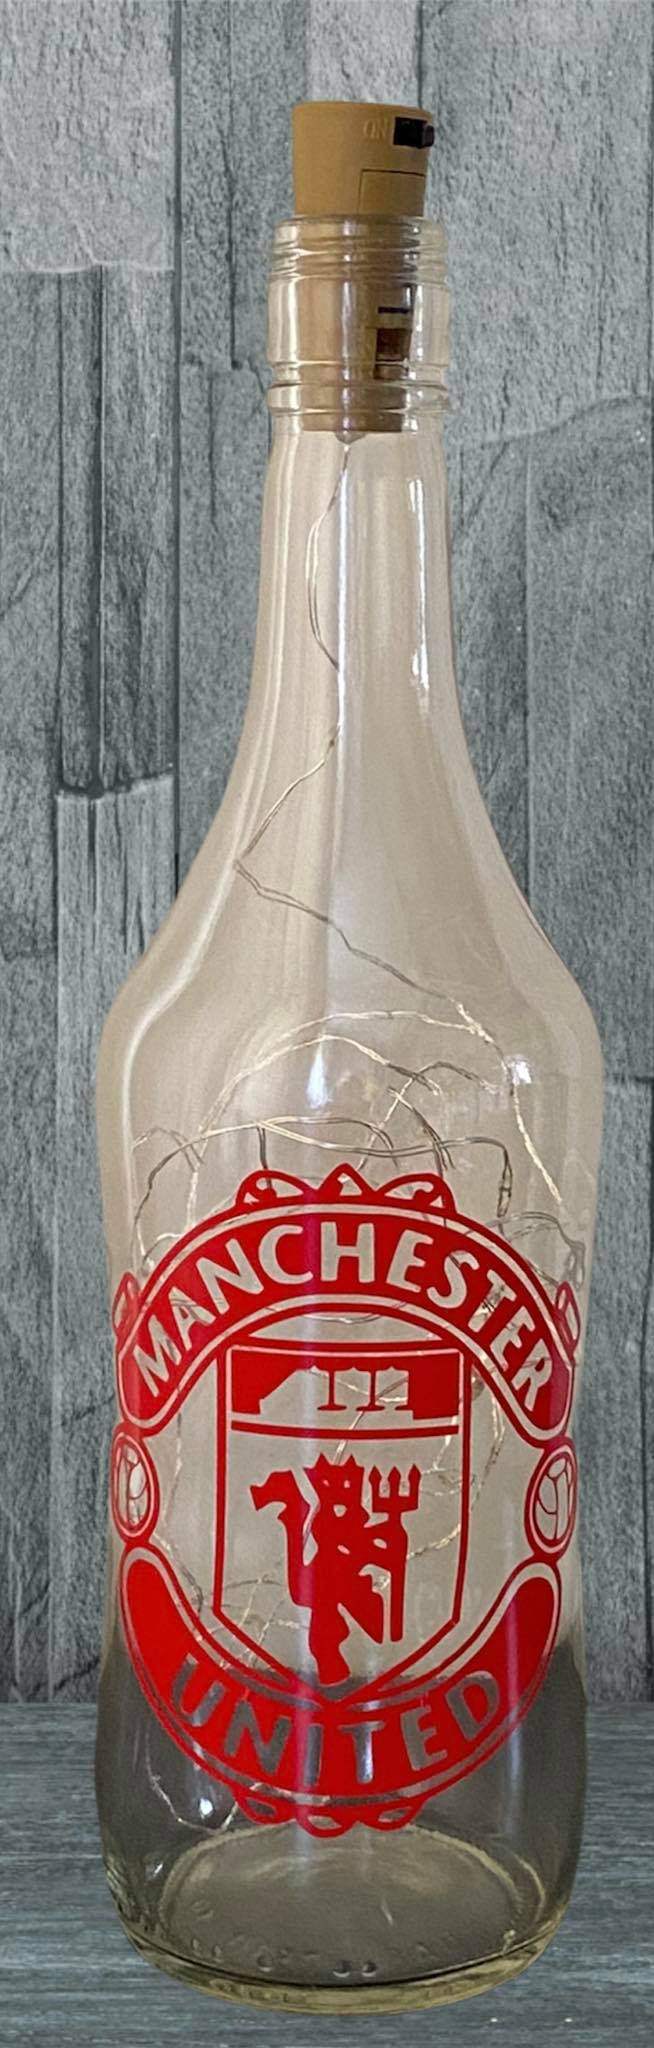 Manchester Utd Light Up Bottle